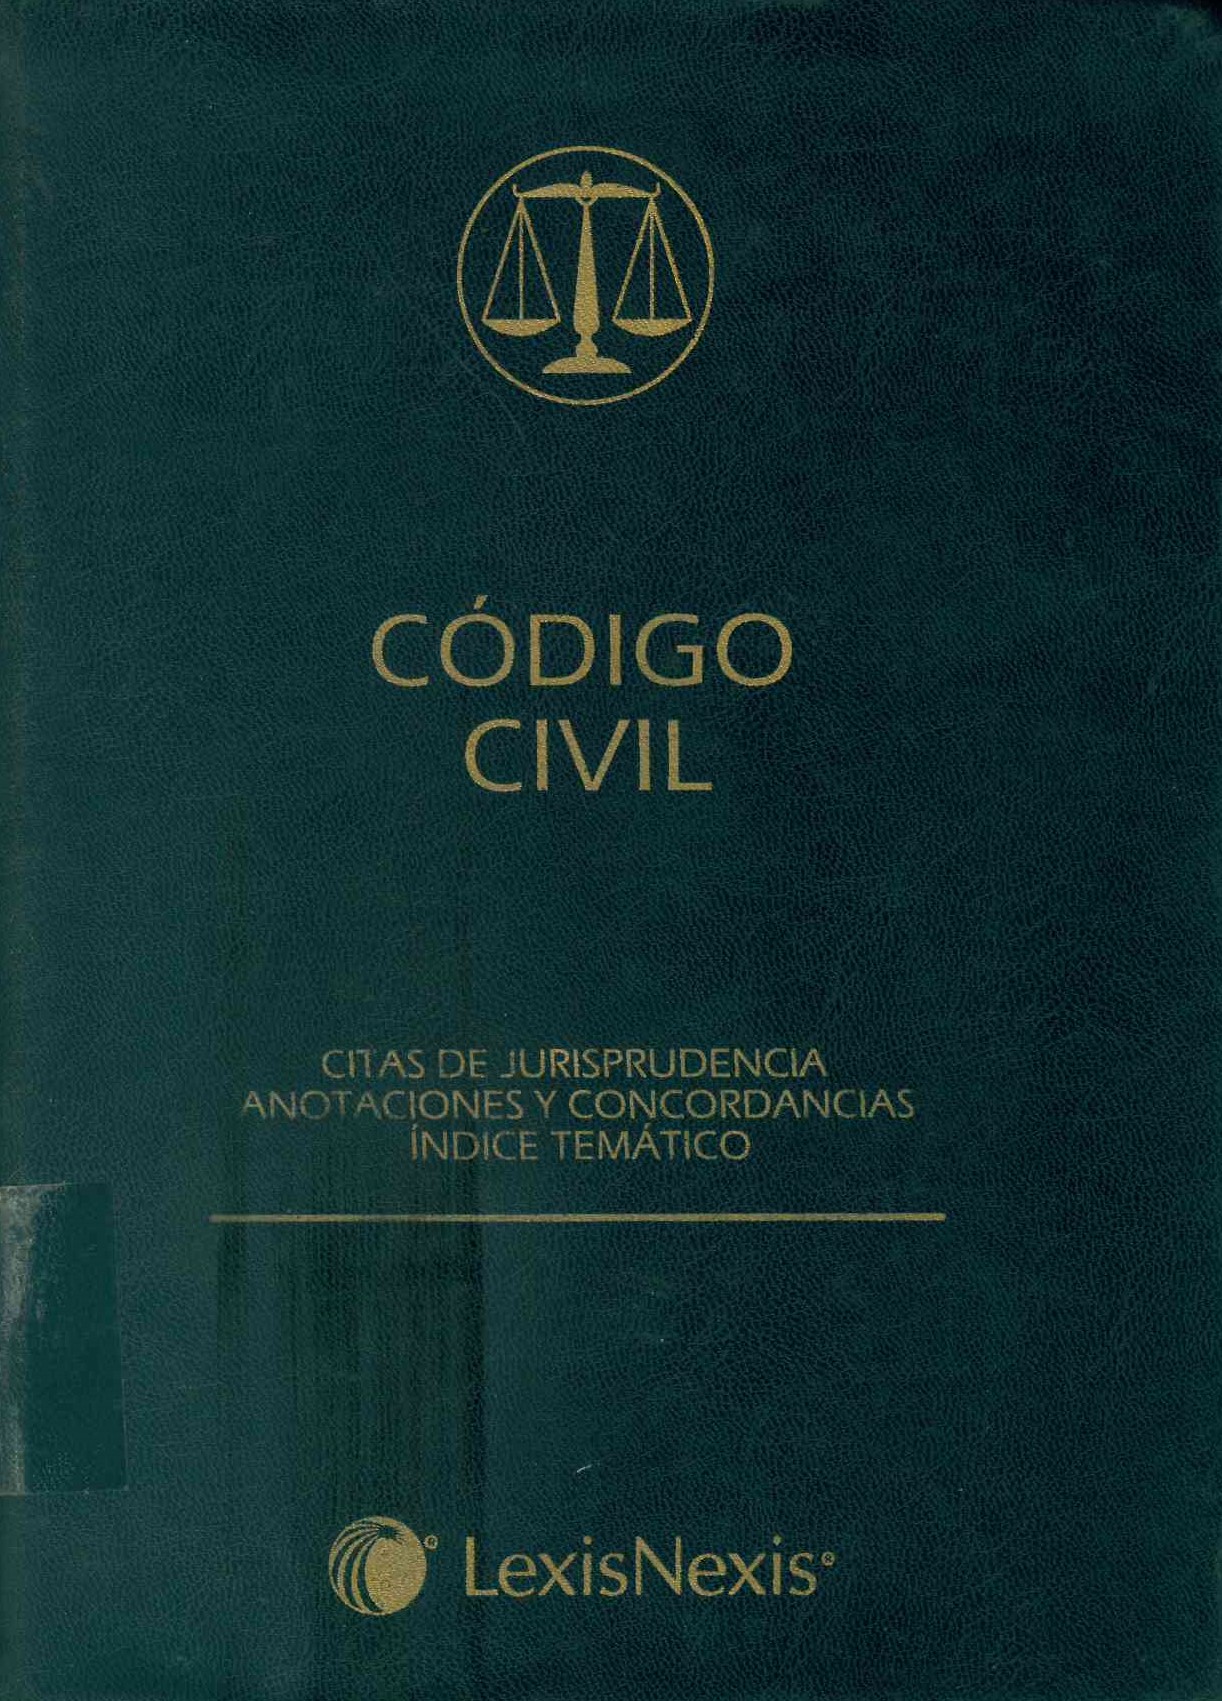 Código civil : citas de jurisprudencia anotaciones y concordancias